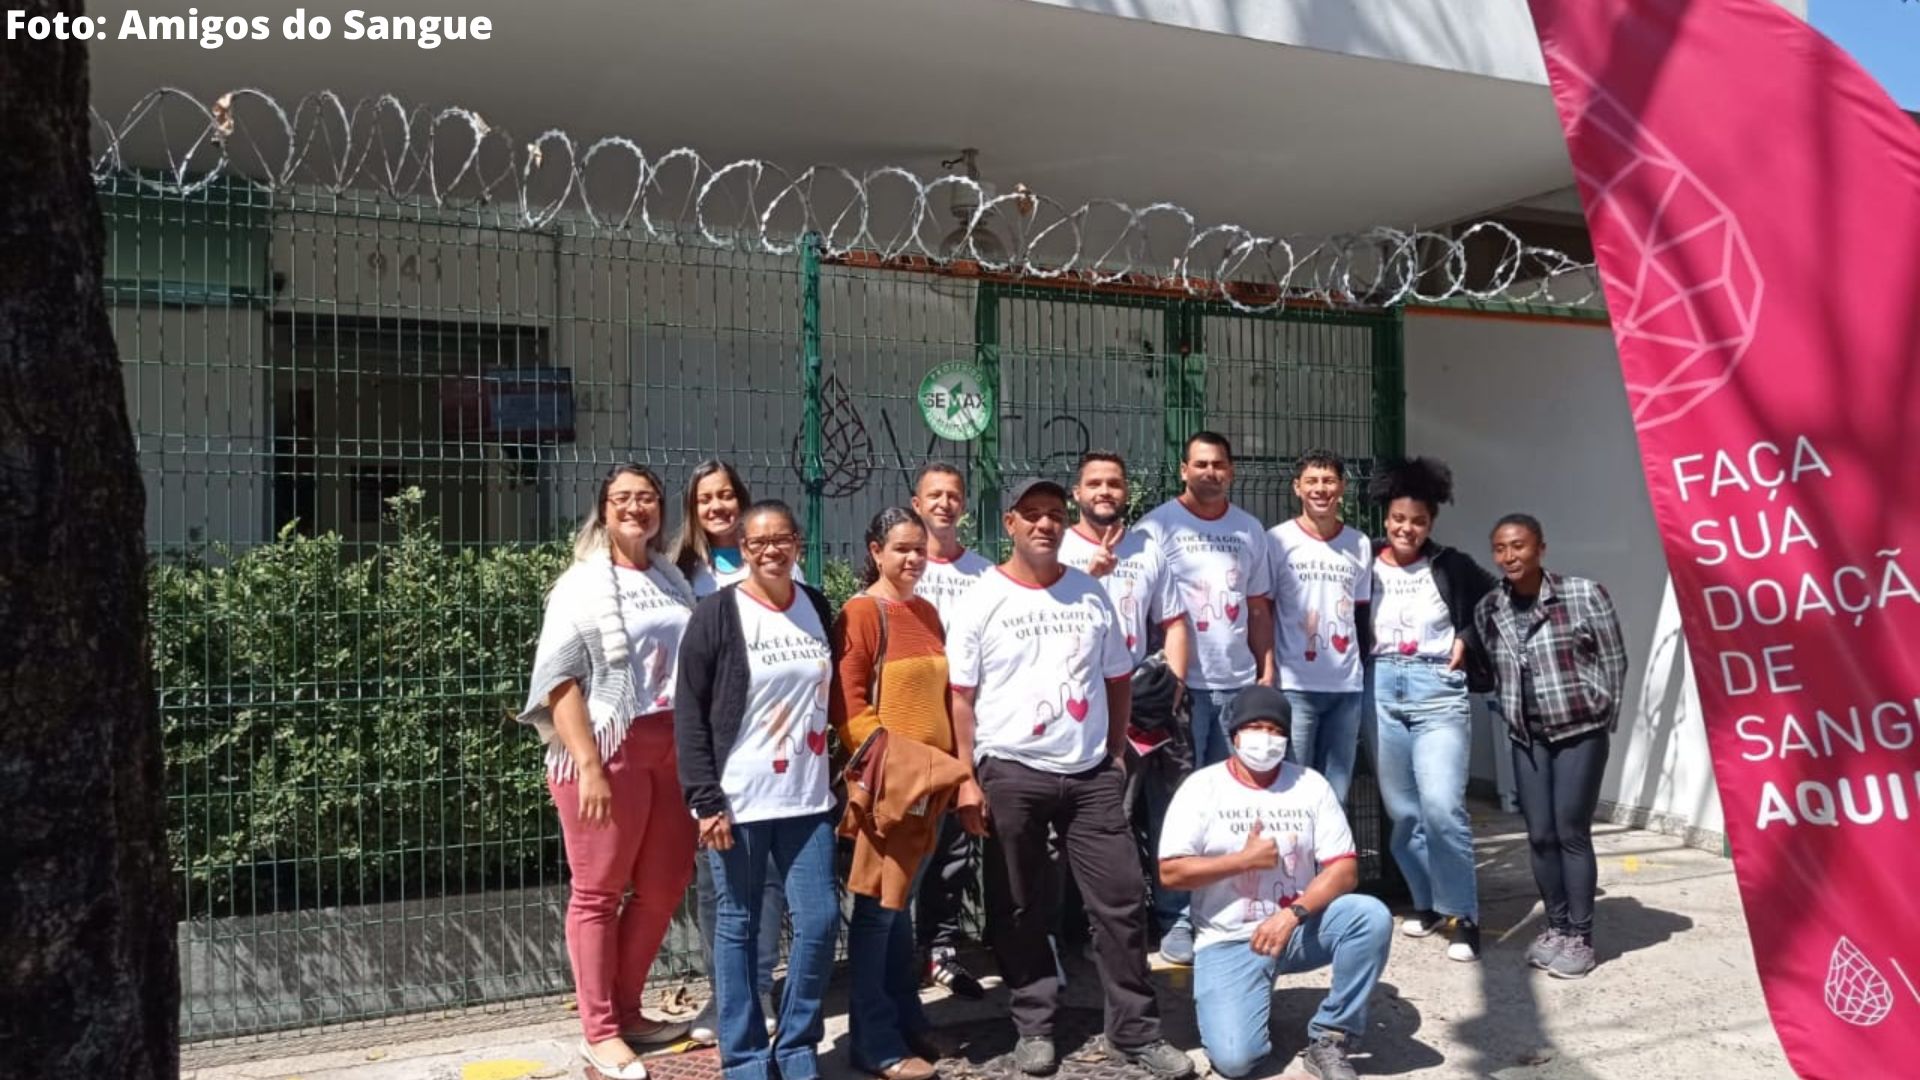 Grupo “Amigos do Sangue”, criado em 2017, realiza a organização de caravanas mensais para voluntários na doação de sangue e para o cadastro no banco de medula óssea no Hemocentro, em Belo Horizonte.